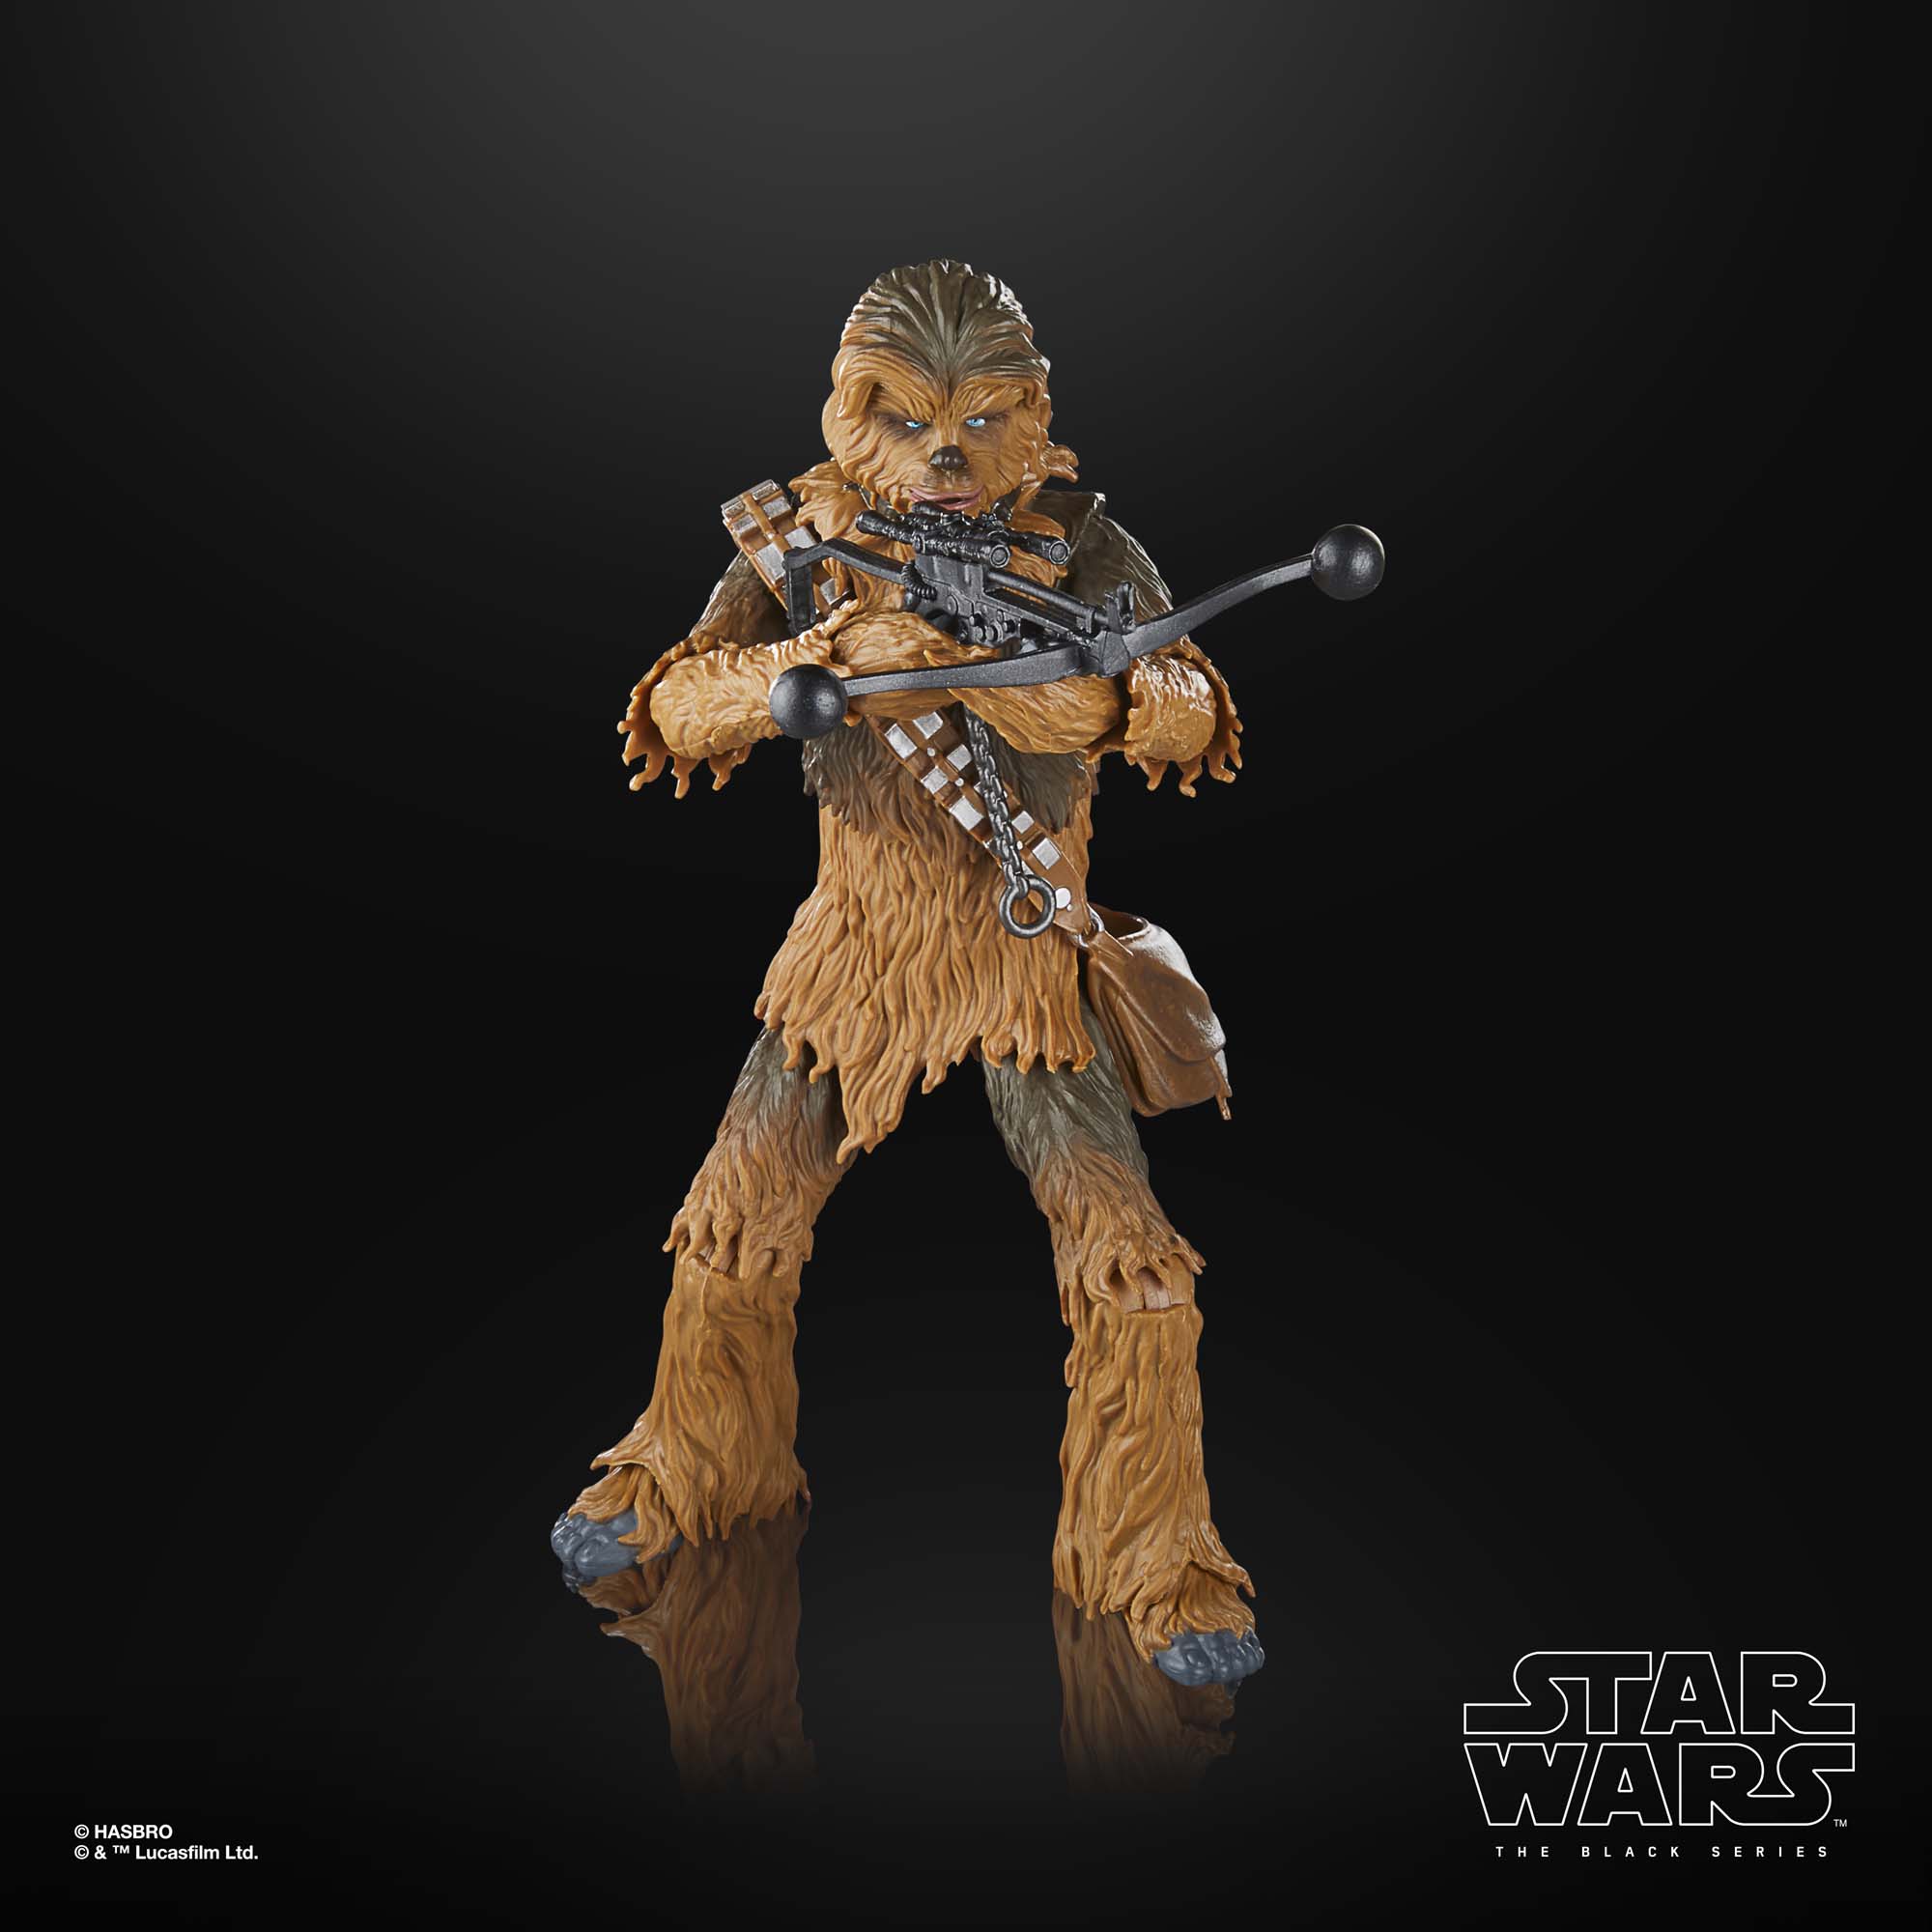 VP leicht beschädigt!!! Star Wars The Black Series Chewbacca Star Wars Action-Figur (15 cm) F71125X0 5010996171061